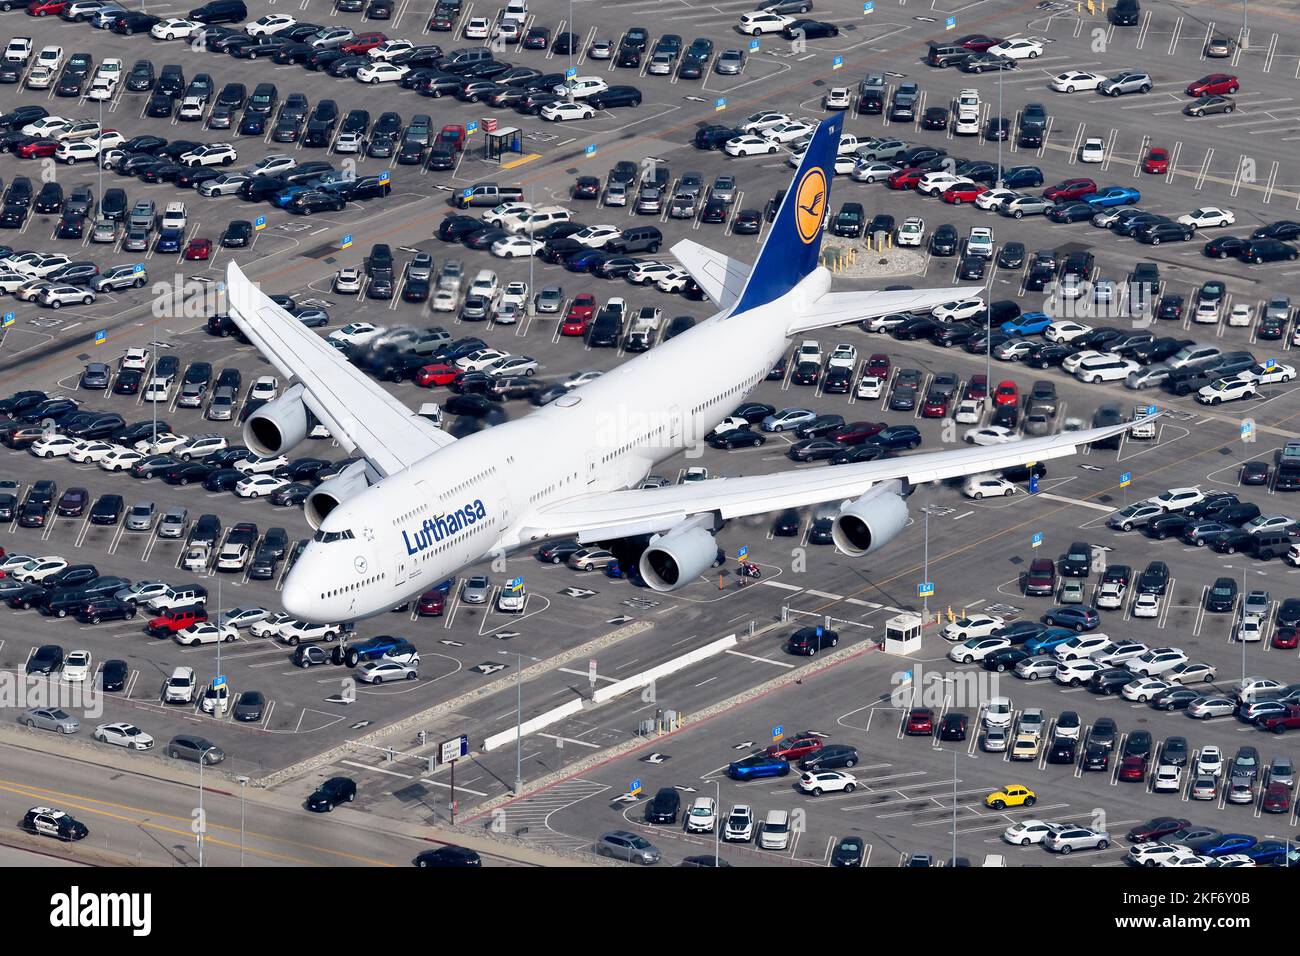 L'avion Lufthansa Boeing 747 est sur le point d'atterrir. Avion 747-8i de la compagnie aérienne Deutsche Lufthansa immatriculée sous le nom de D-ABYN. Banque D'Images